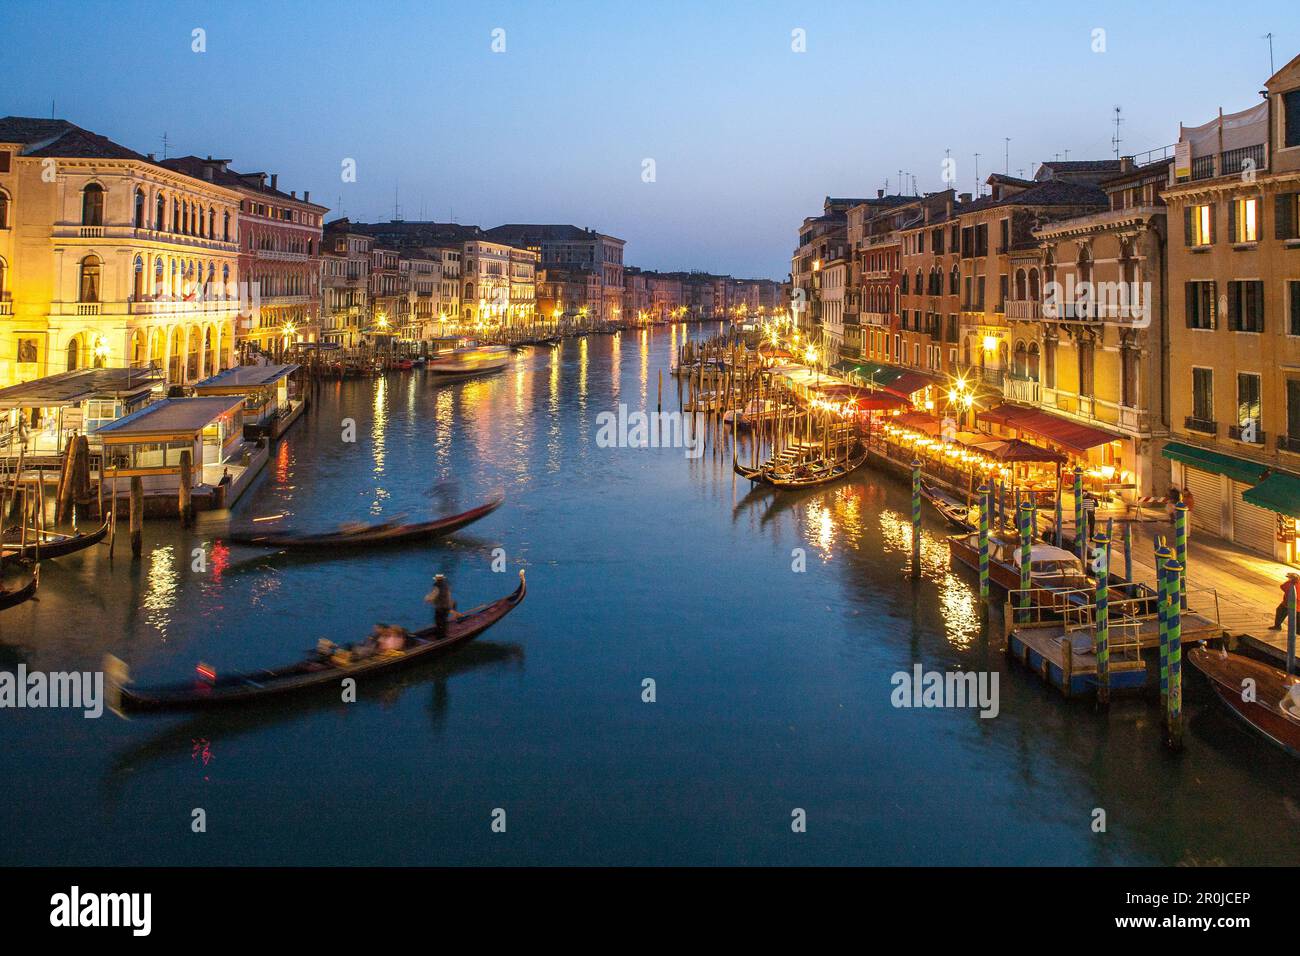 Grand Canal, twilight, reflections, gondola, lights, from Rialto Bridge, Venice, Italy Stock Photo